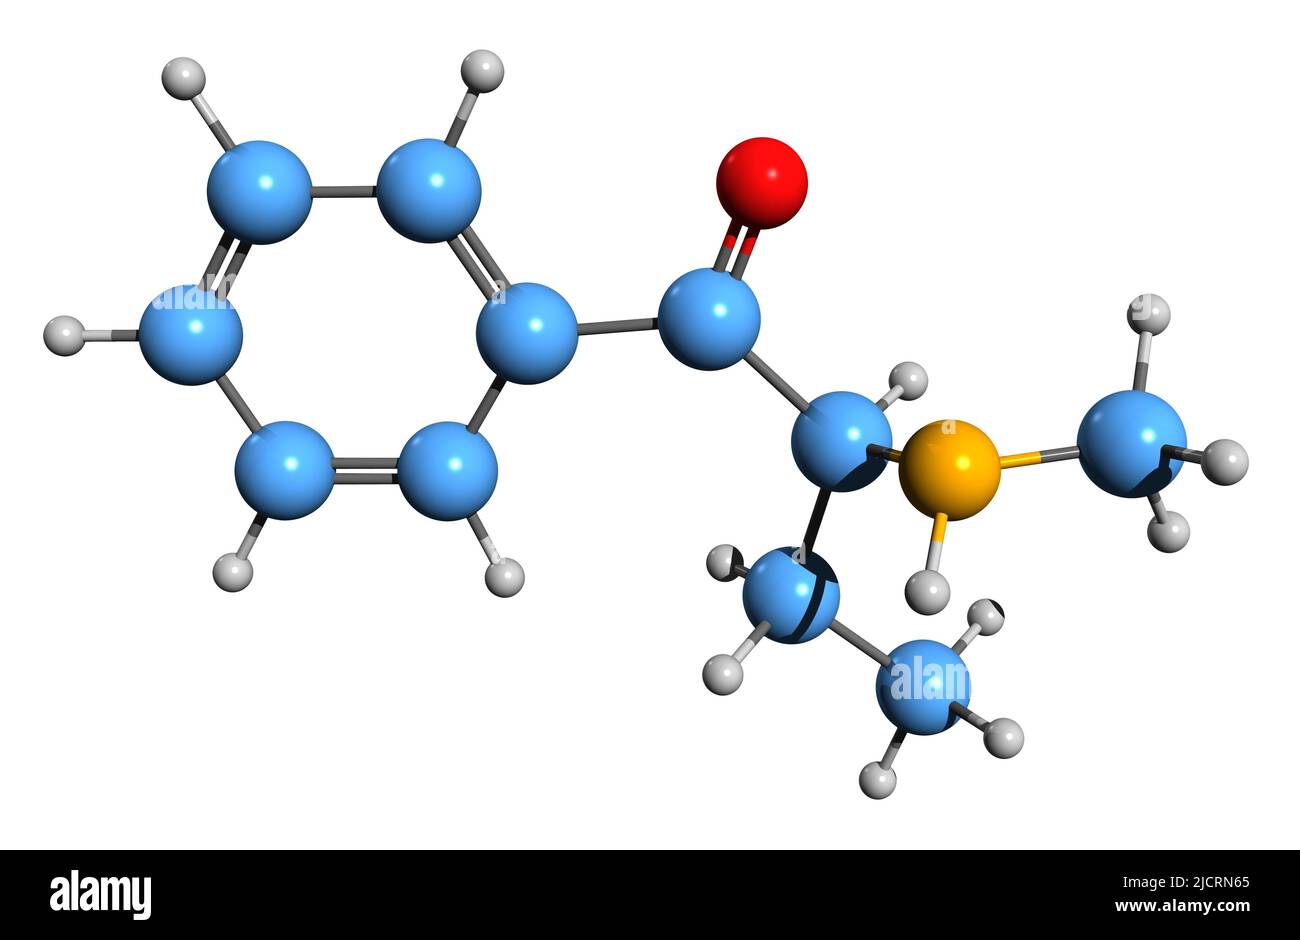 3D Bild der Skelettformel von Buphedrone - molekulare chemische Struktur des Stimulans MABP isoliert auf weißem Hintergrund Stockfoto